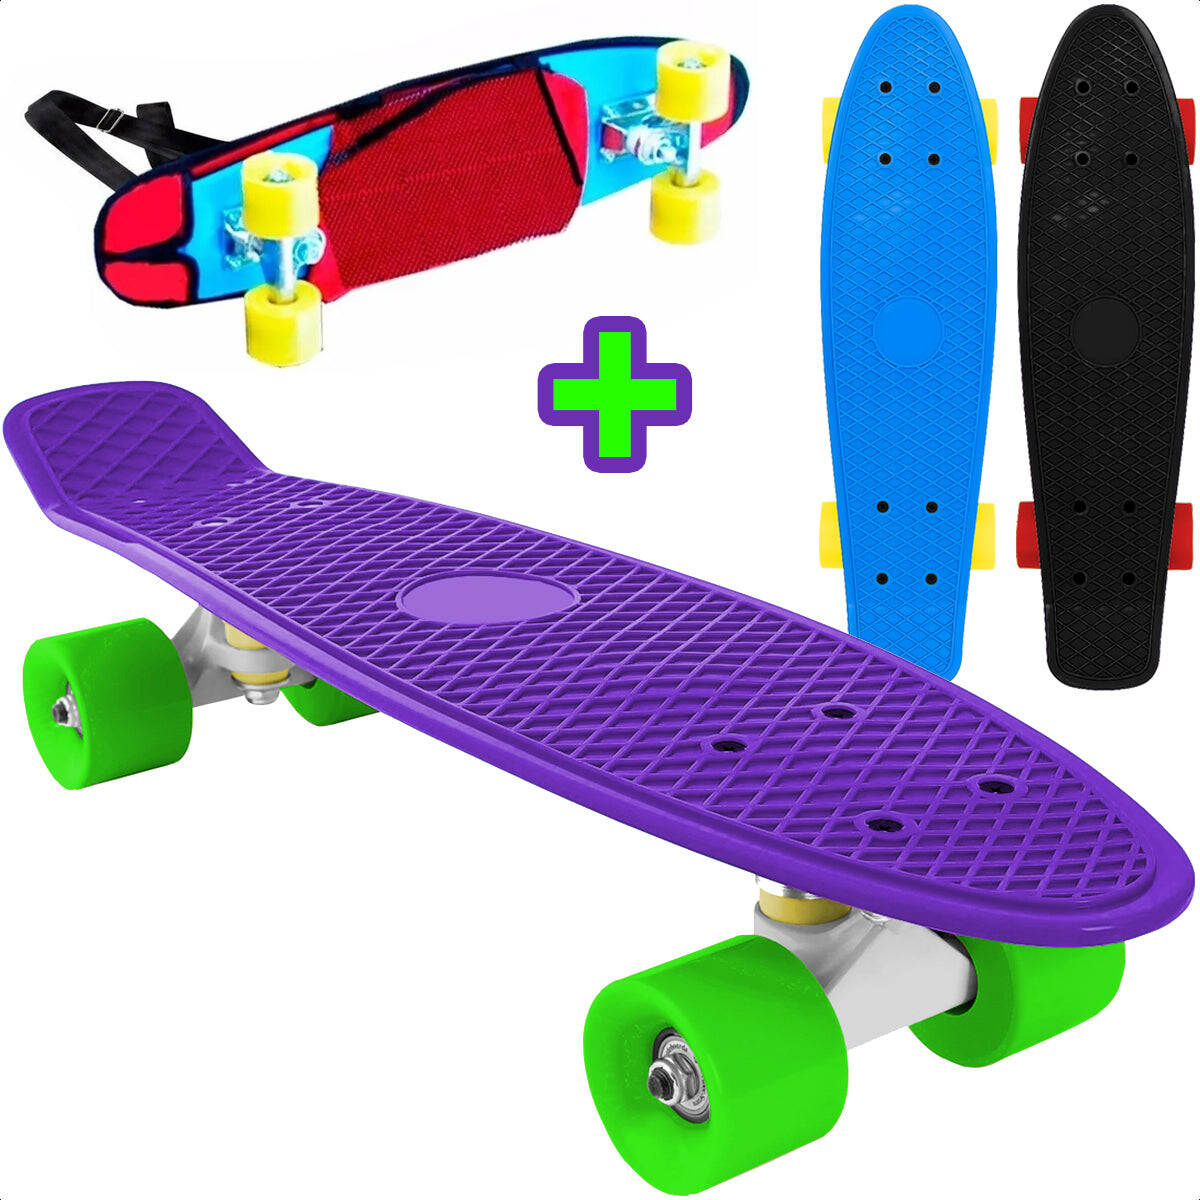 Skate Longboard Penny 57cm Patineta Aluminio + Bolso - Violeta-Estilo 1 